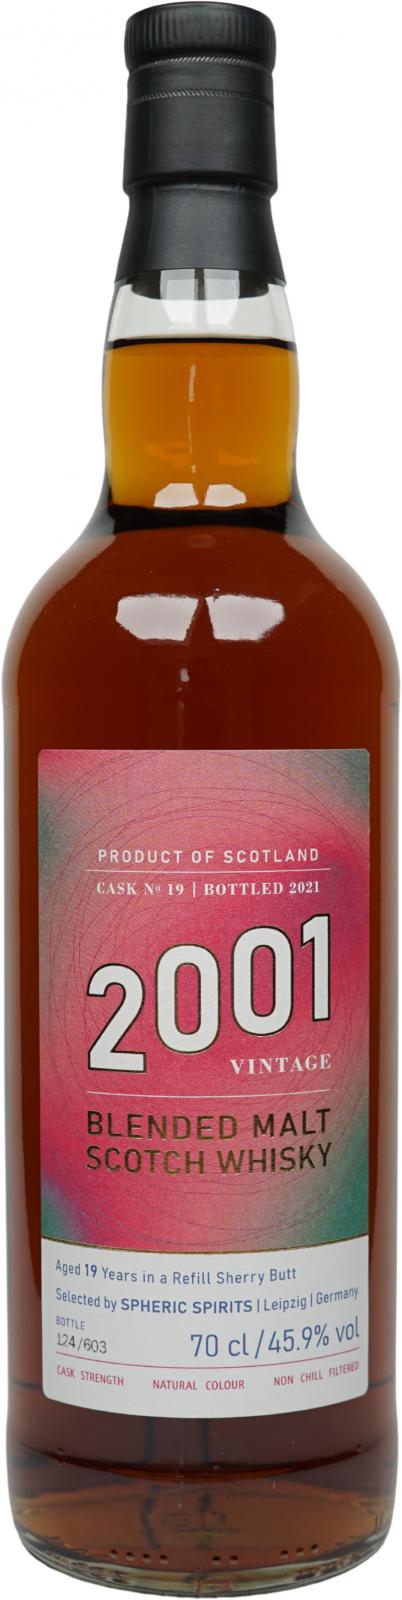 Blended Malt Scotch Whisky 2001 SpSp